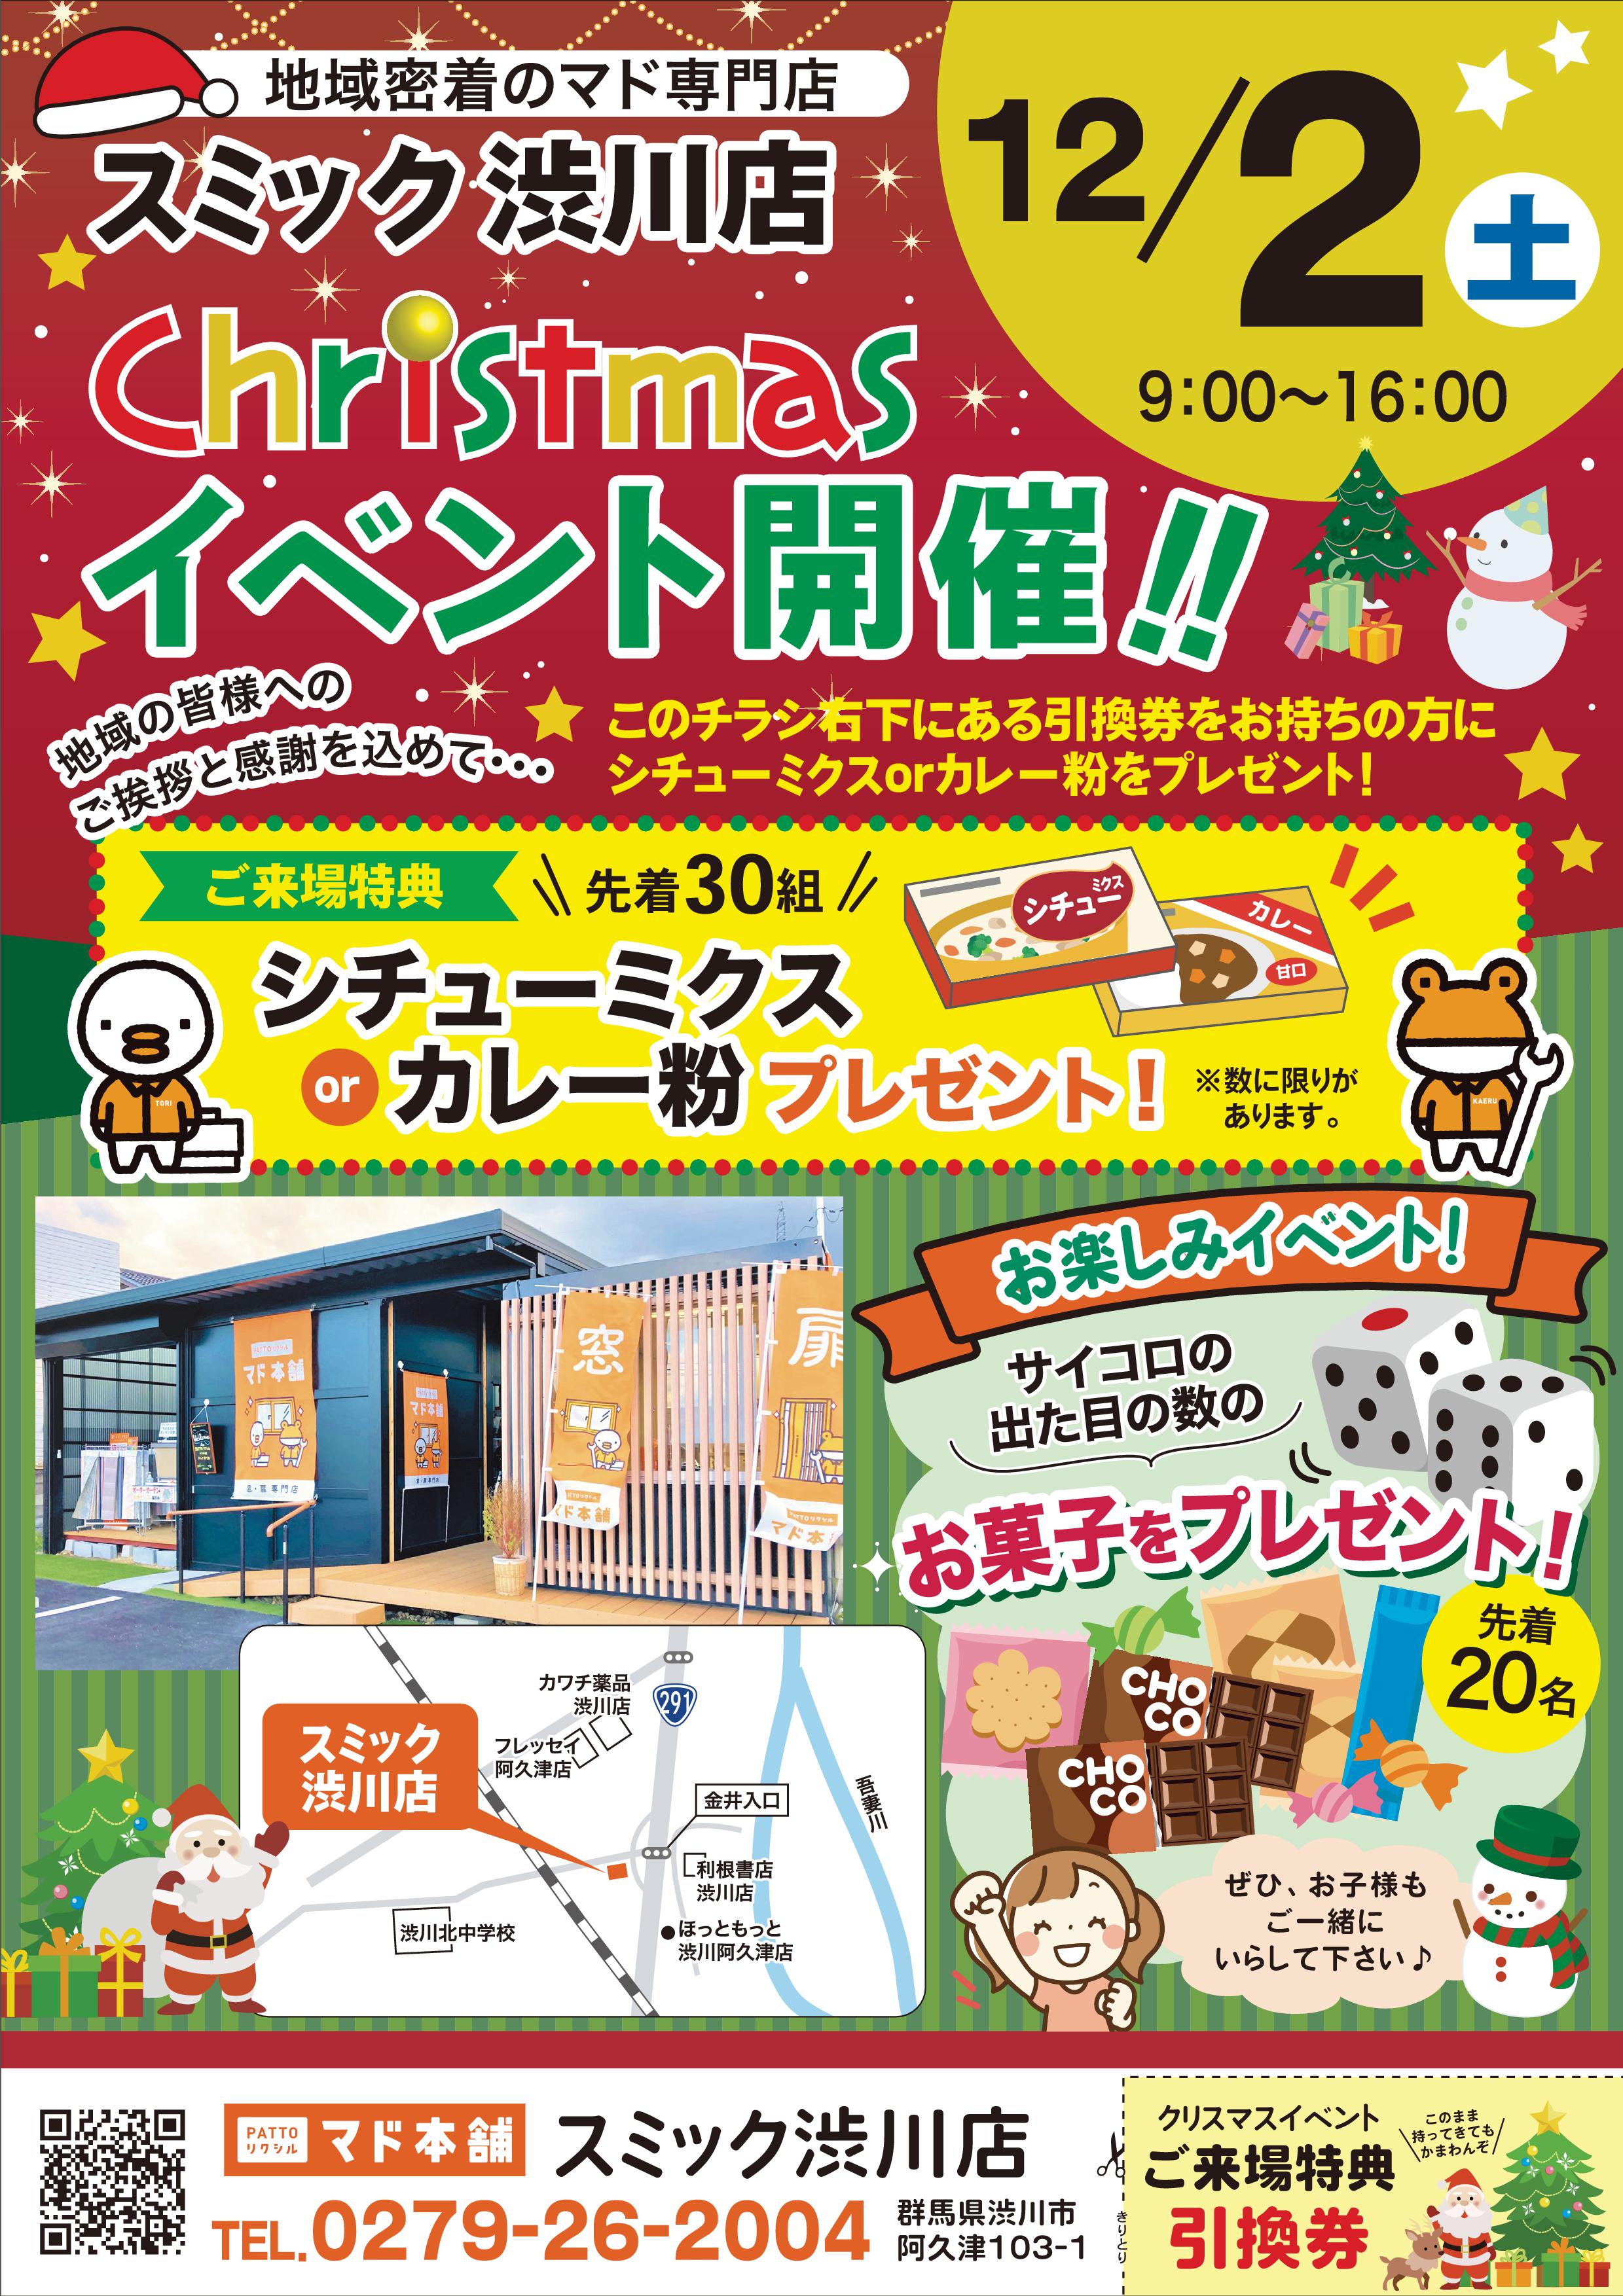 明日12月2日(土)、クリスマスイベント開催です🎄 スミック 渋川店のブログ 写真1